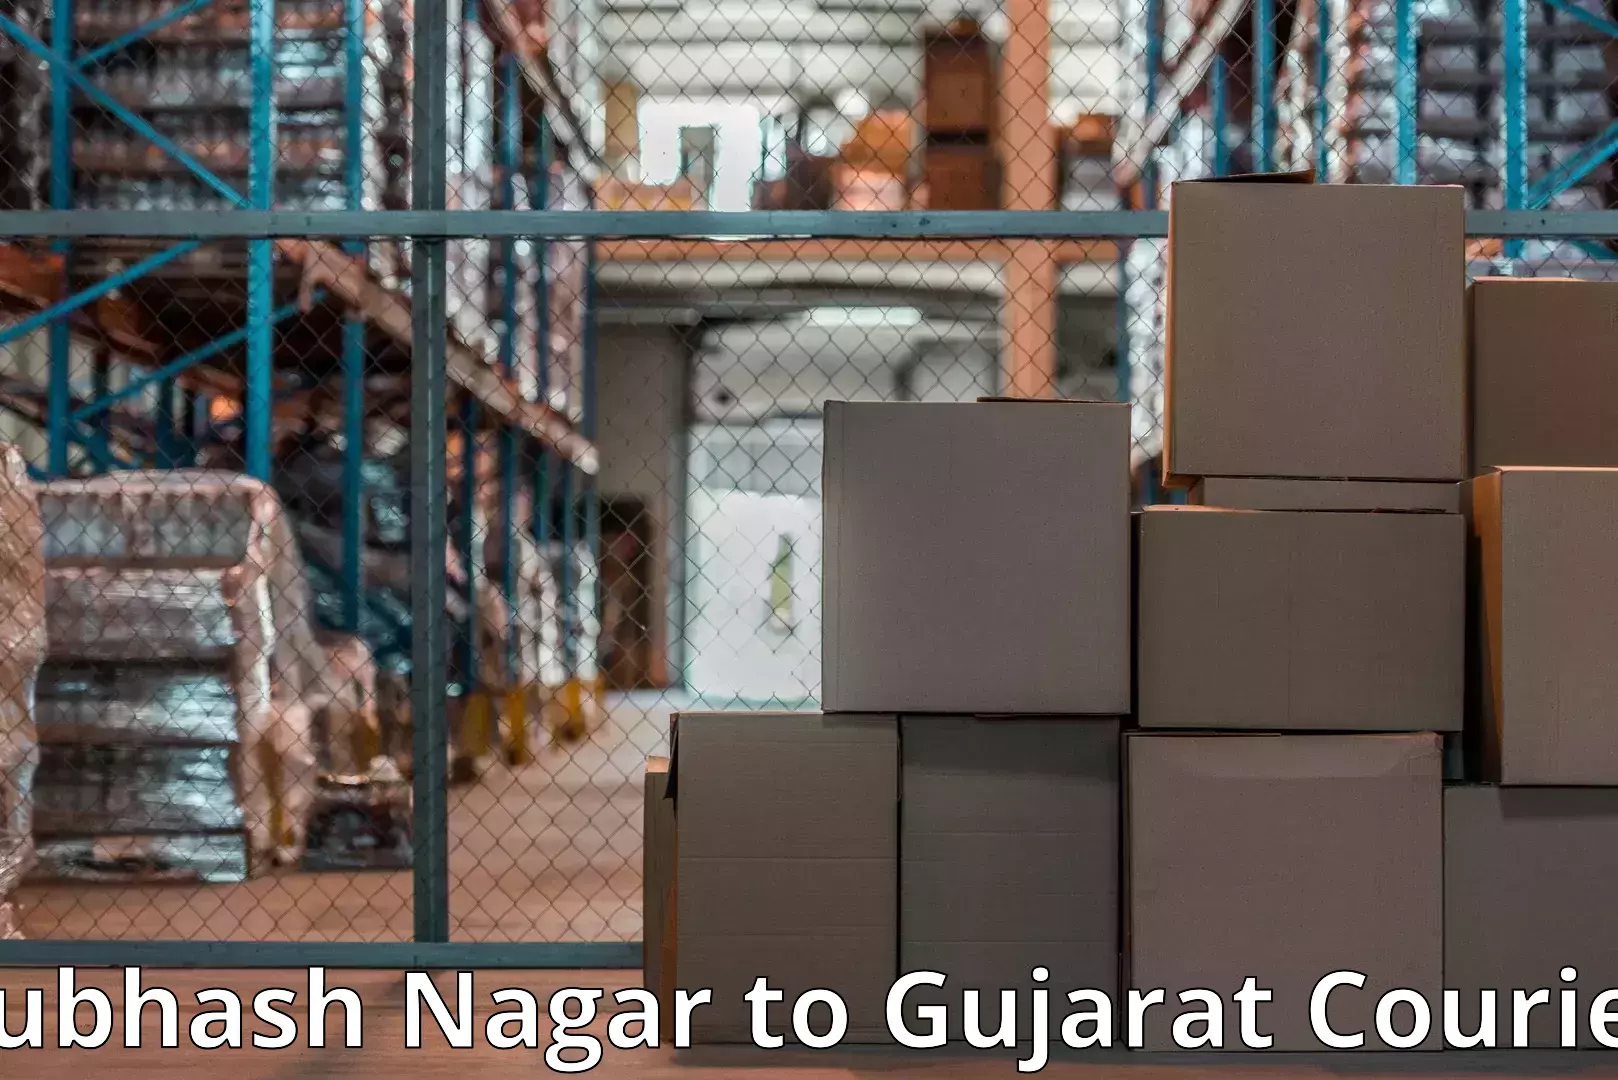 Furniture delivery service Subhash Nagar to Shihori